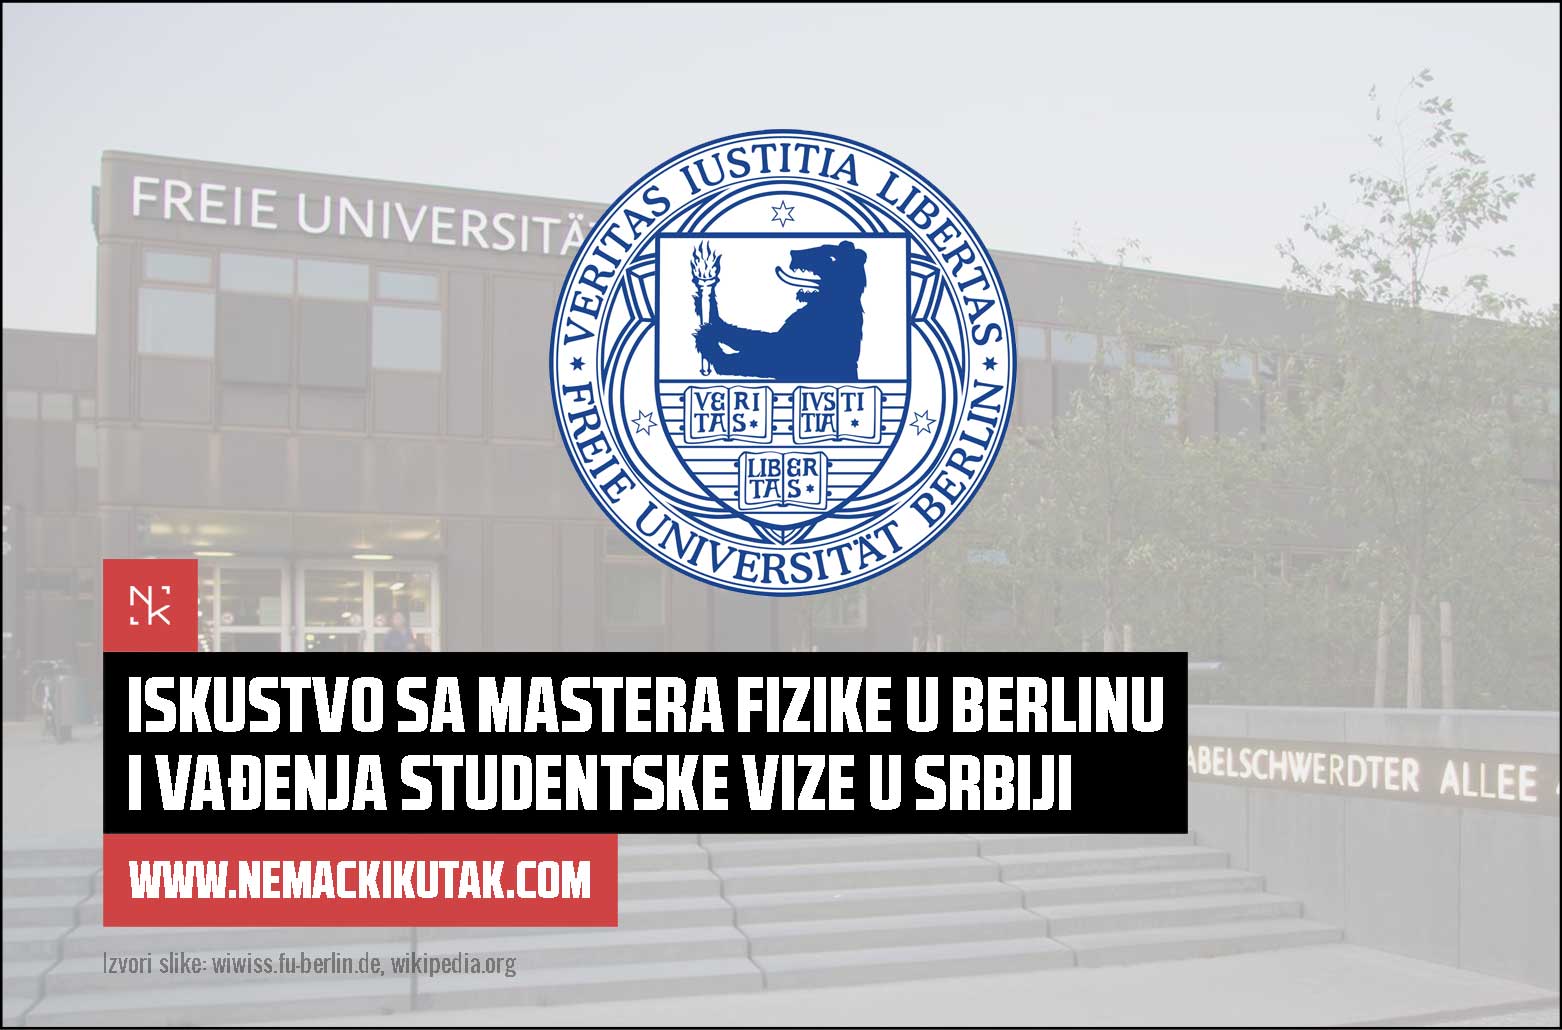 iskustvo-sa-mastera-fizike-u-berlinu-i-vadenja-studentke-vize-u-srbiji_milica_valent